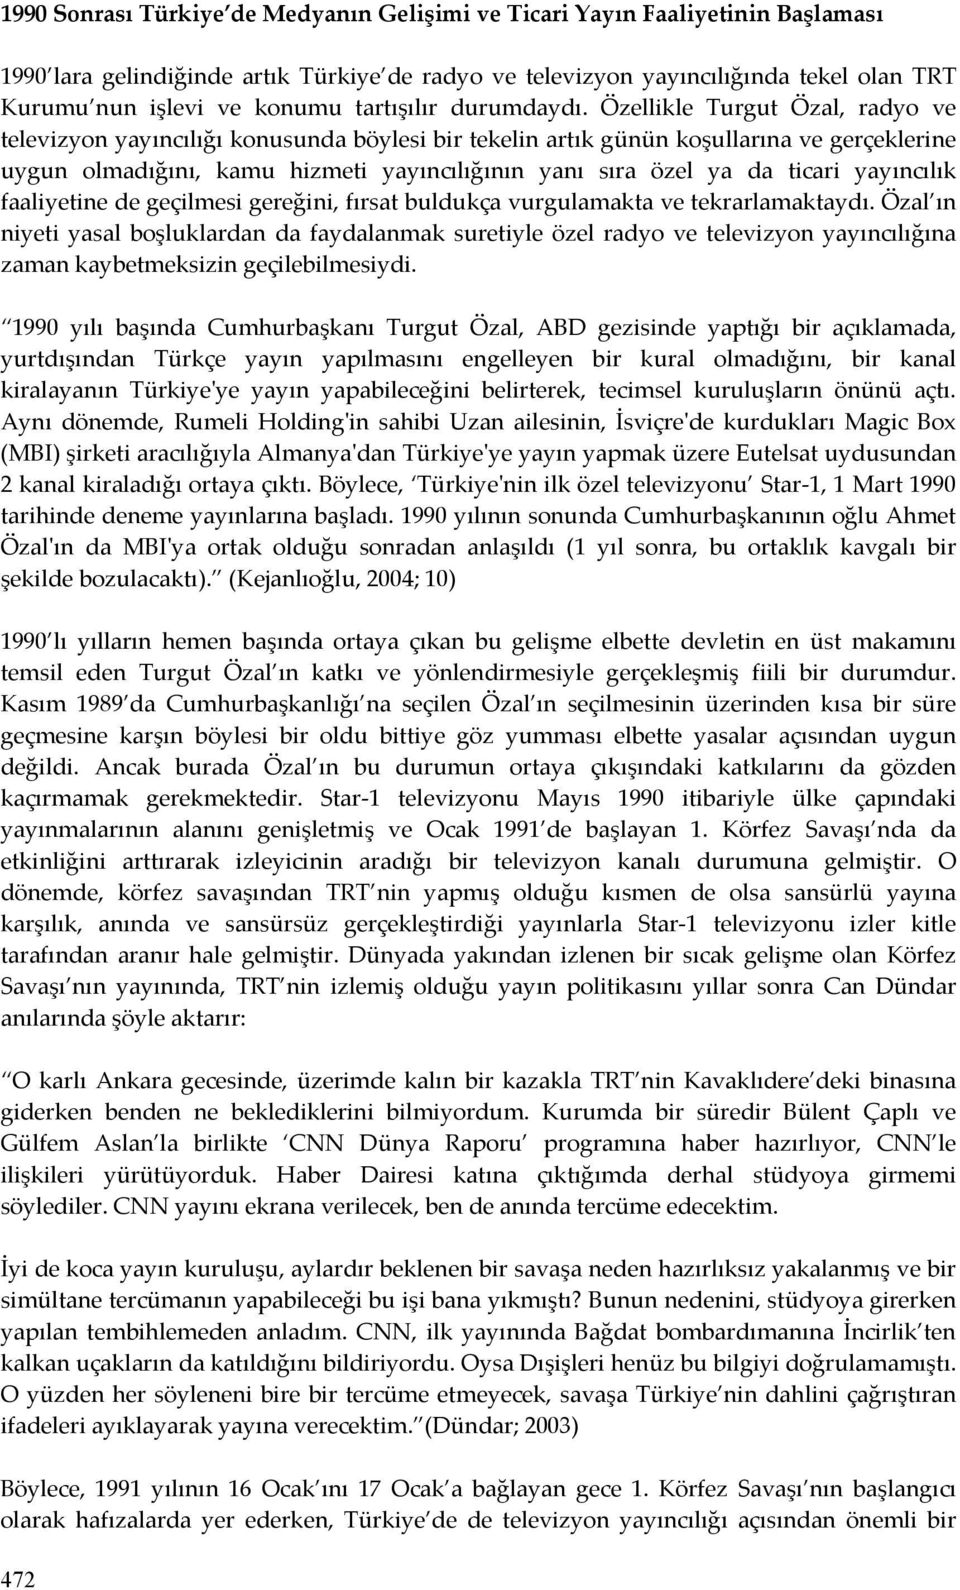 Özellikle Turgut Özal, radyo ve televizyon yayıncılığı konusunda böylesi bir tekelin artık günün koşullarına ve gerçeklerine uygun olmadığını, kamu hizmeti yayıncılığının yanı sıra özel ya da ticari